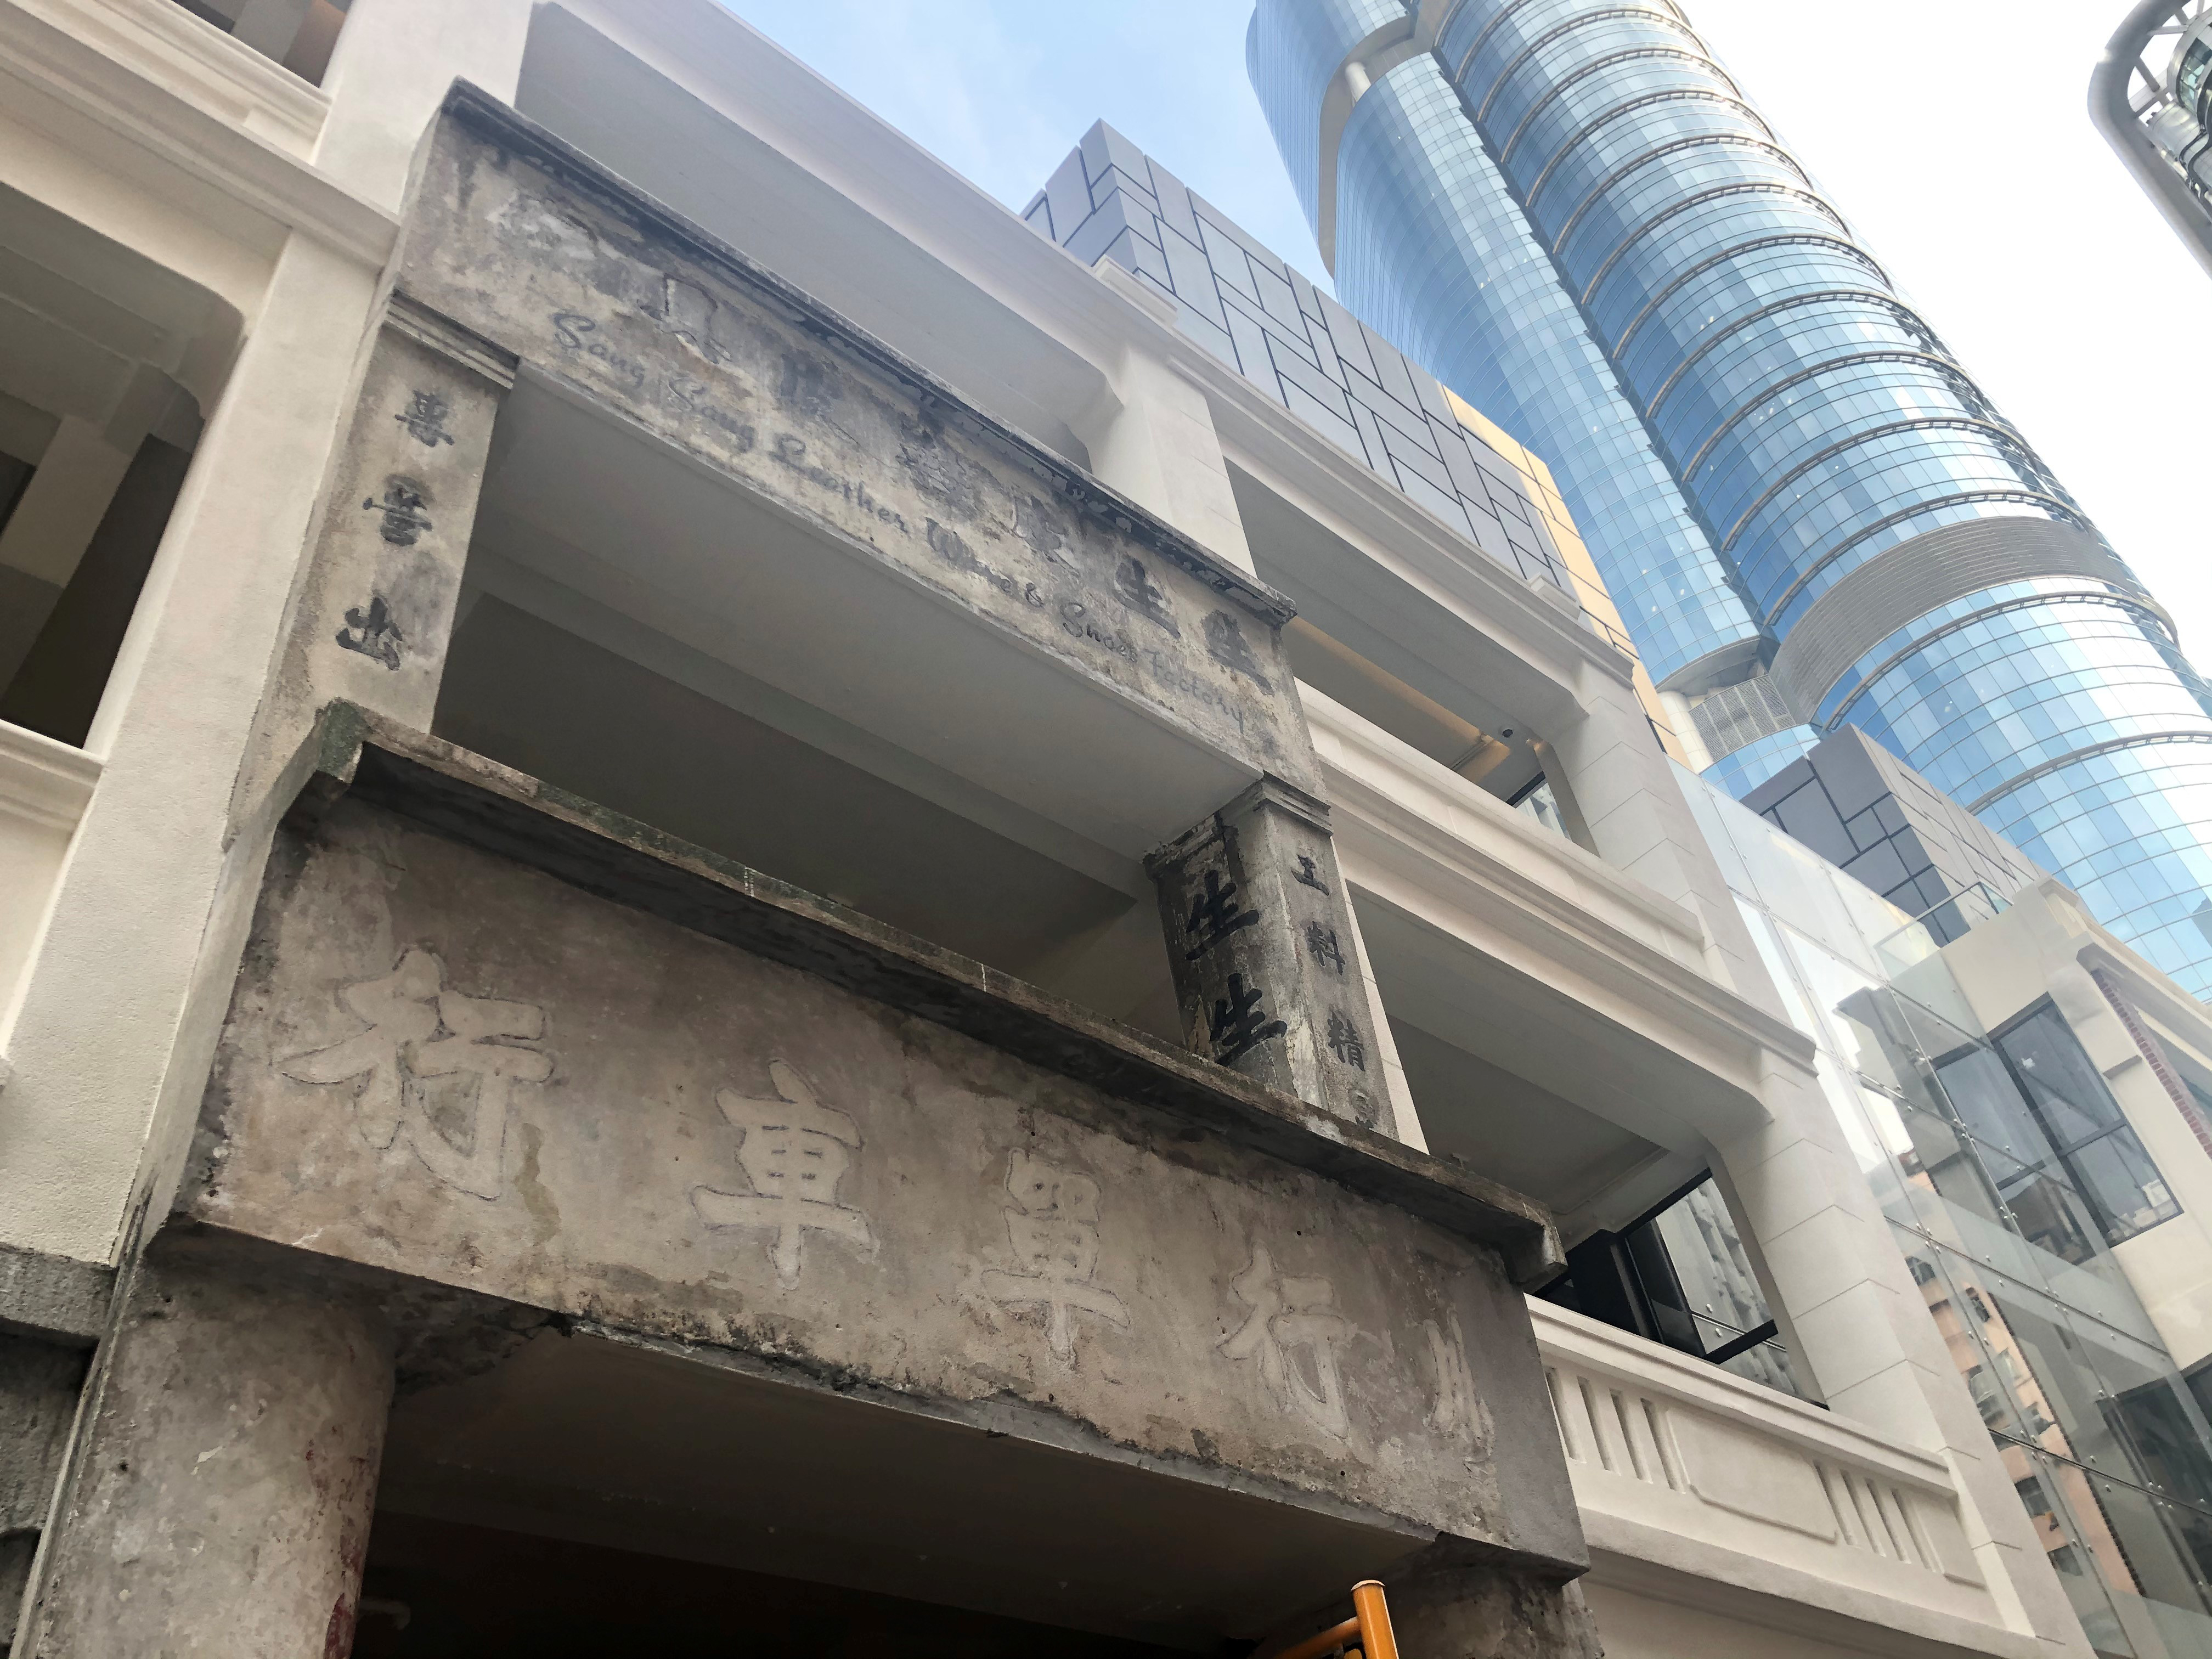 上海街620號二樓的立面上，可以看見「生生皮具行」的中英文及「精美皮具」等文字。該店舖估計在五十至六十年代營業，而現在何去何從，則無從得知。